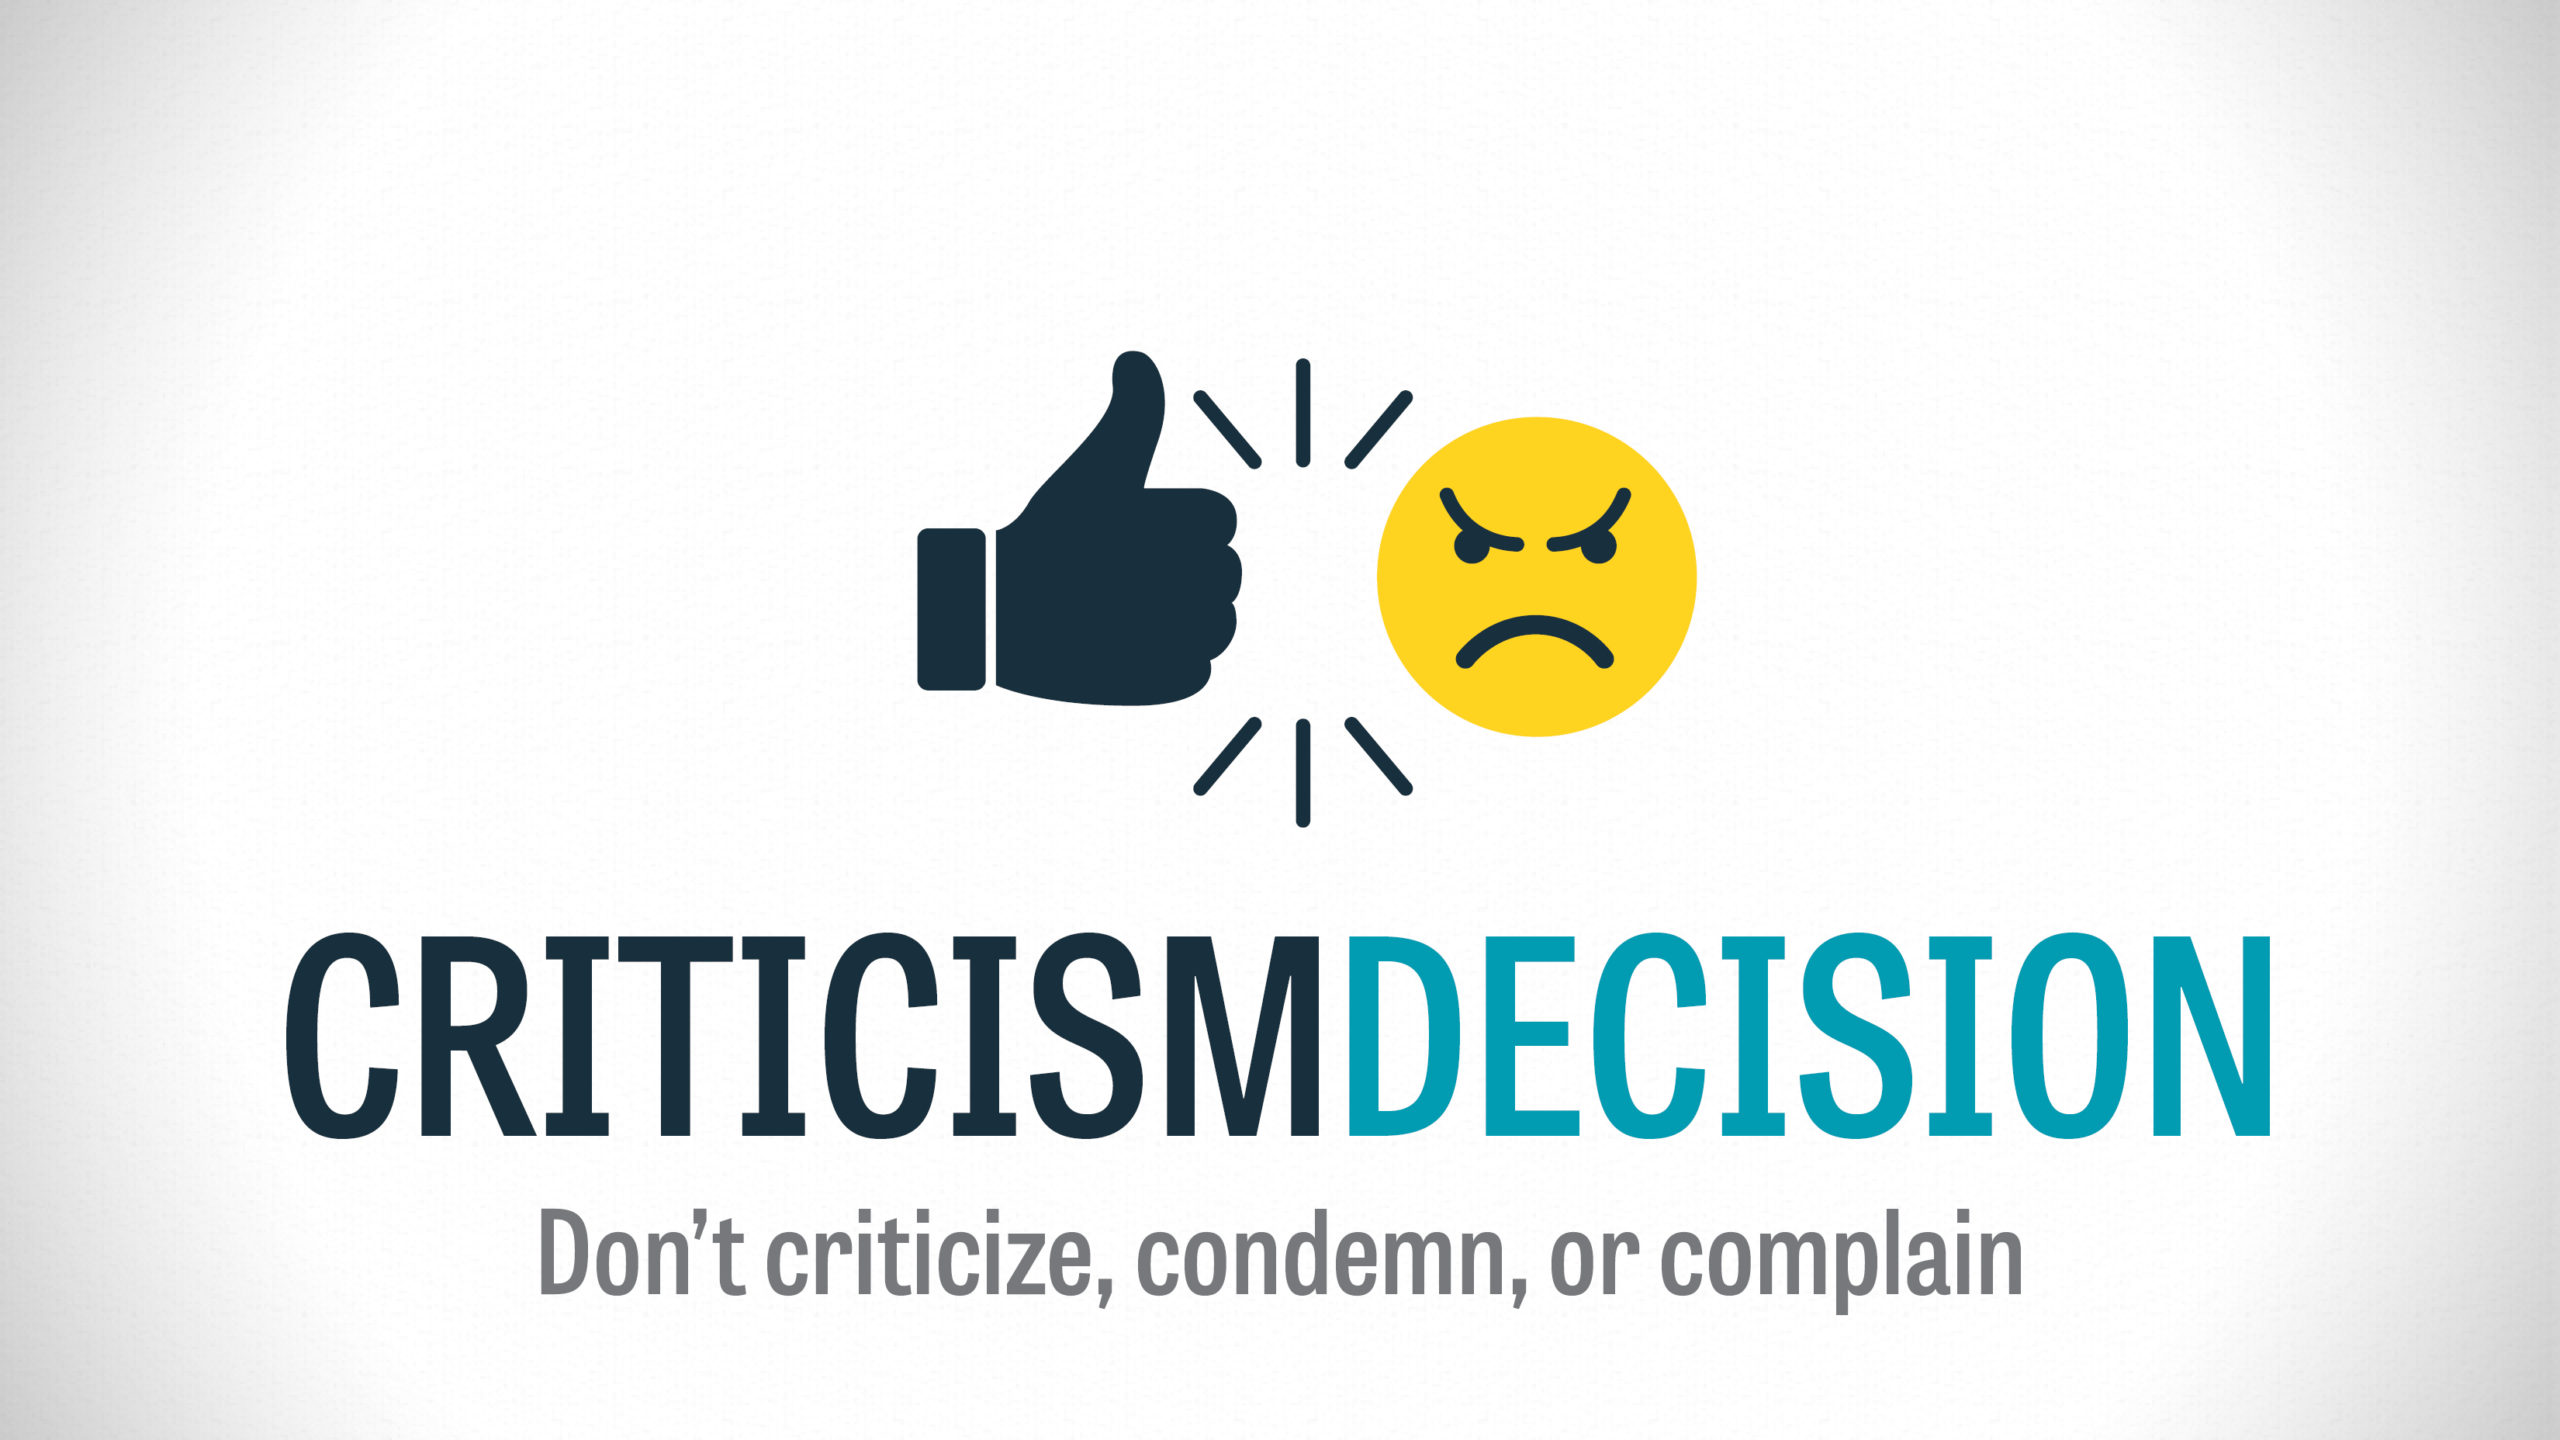 Criticism Decision – Part 2